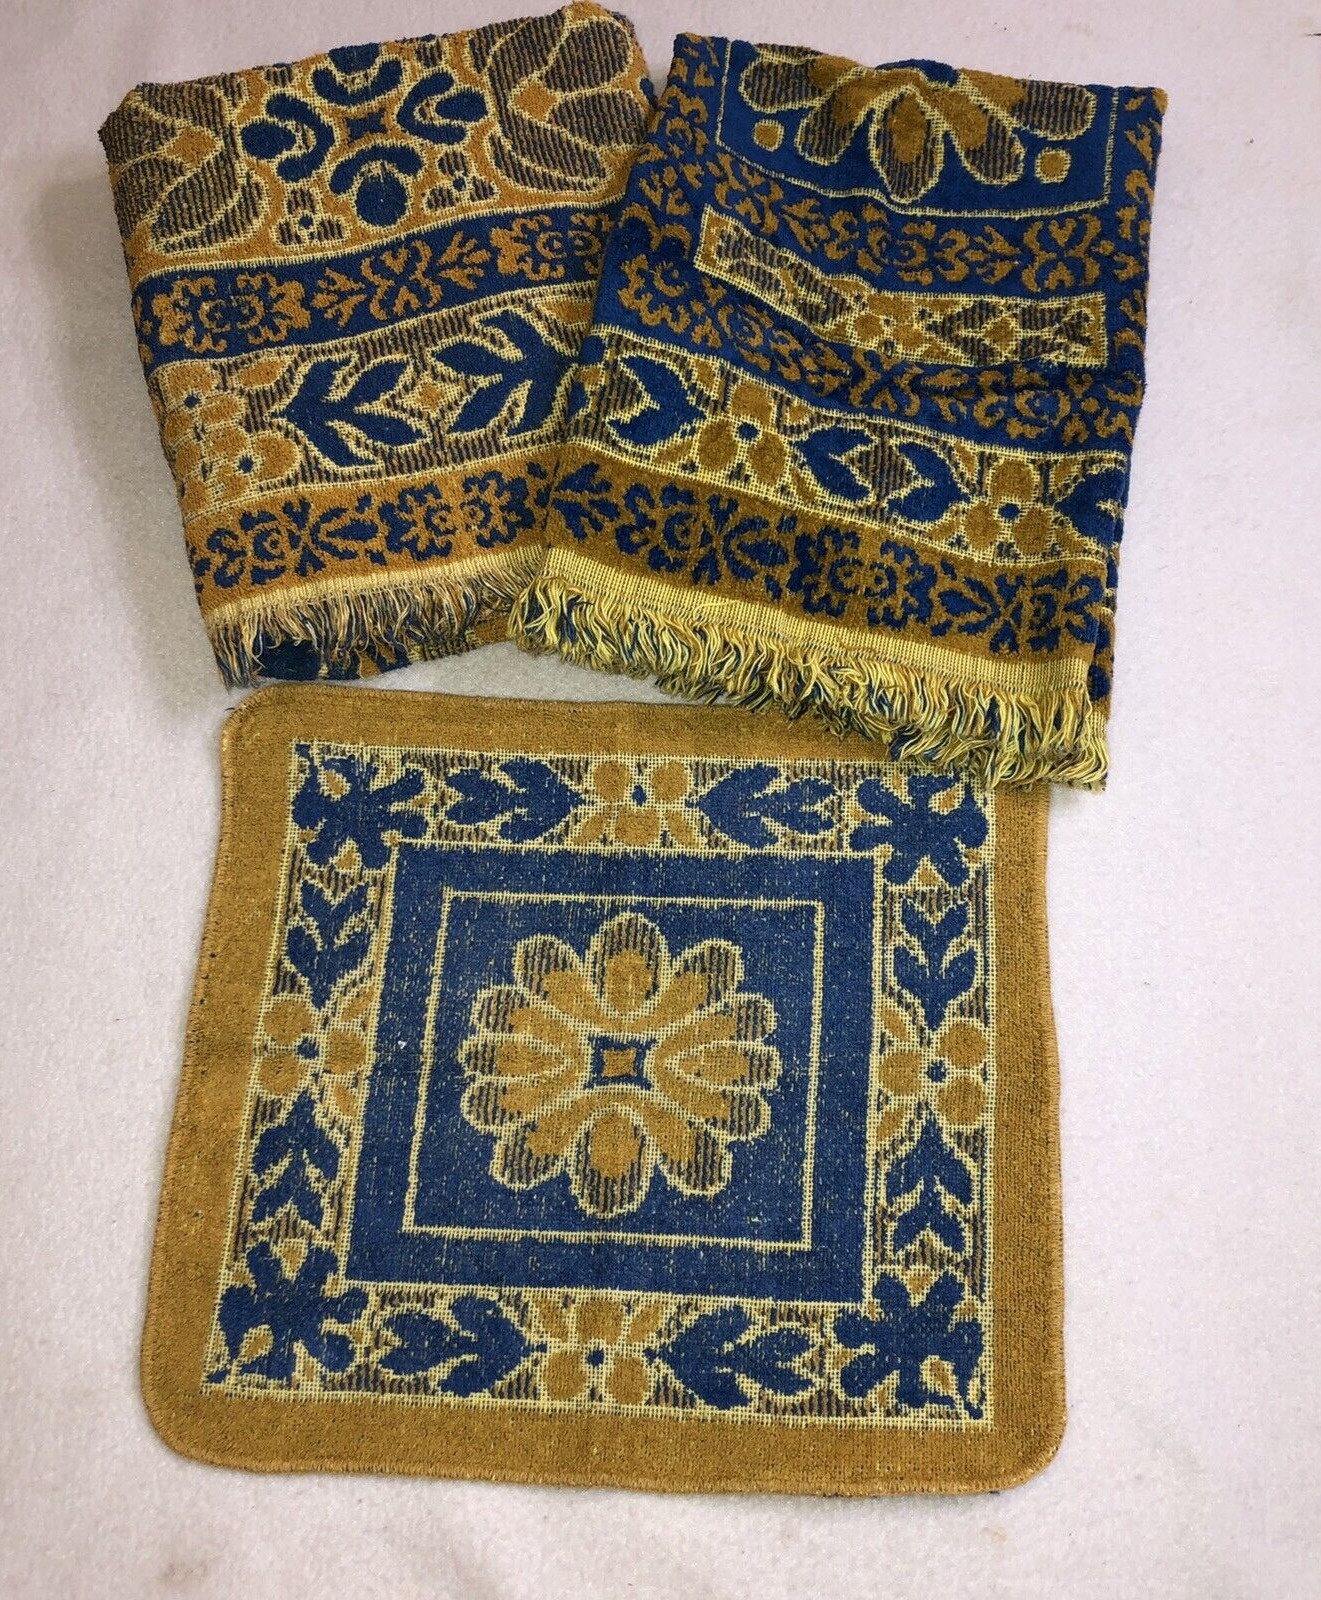 Tastemaker By Mohawk Bath Towel Set MCM Blue Gold Vintage USA Made All Cotton